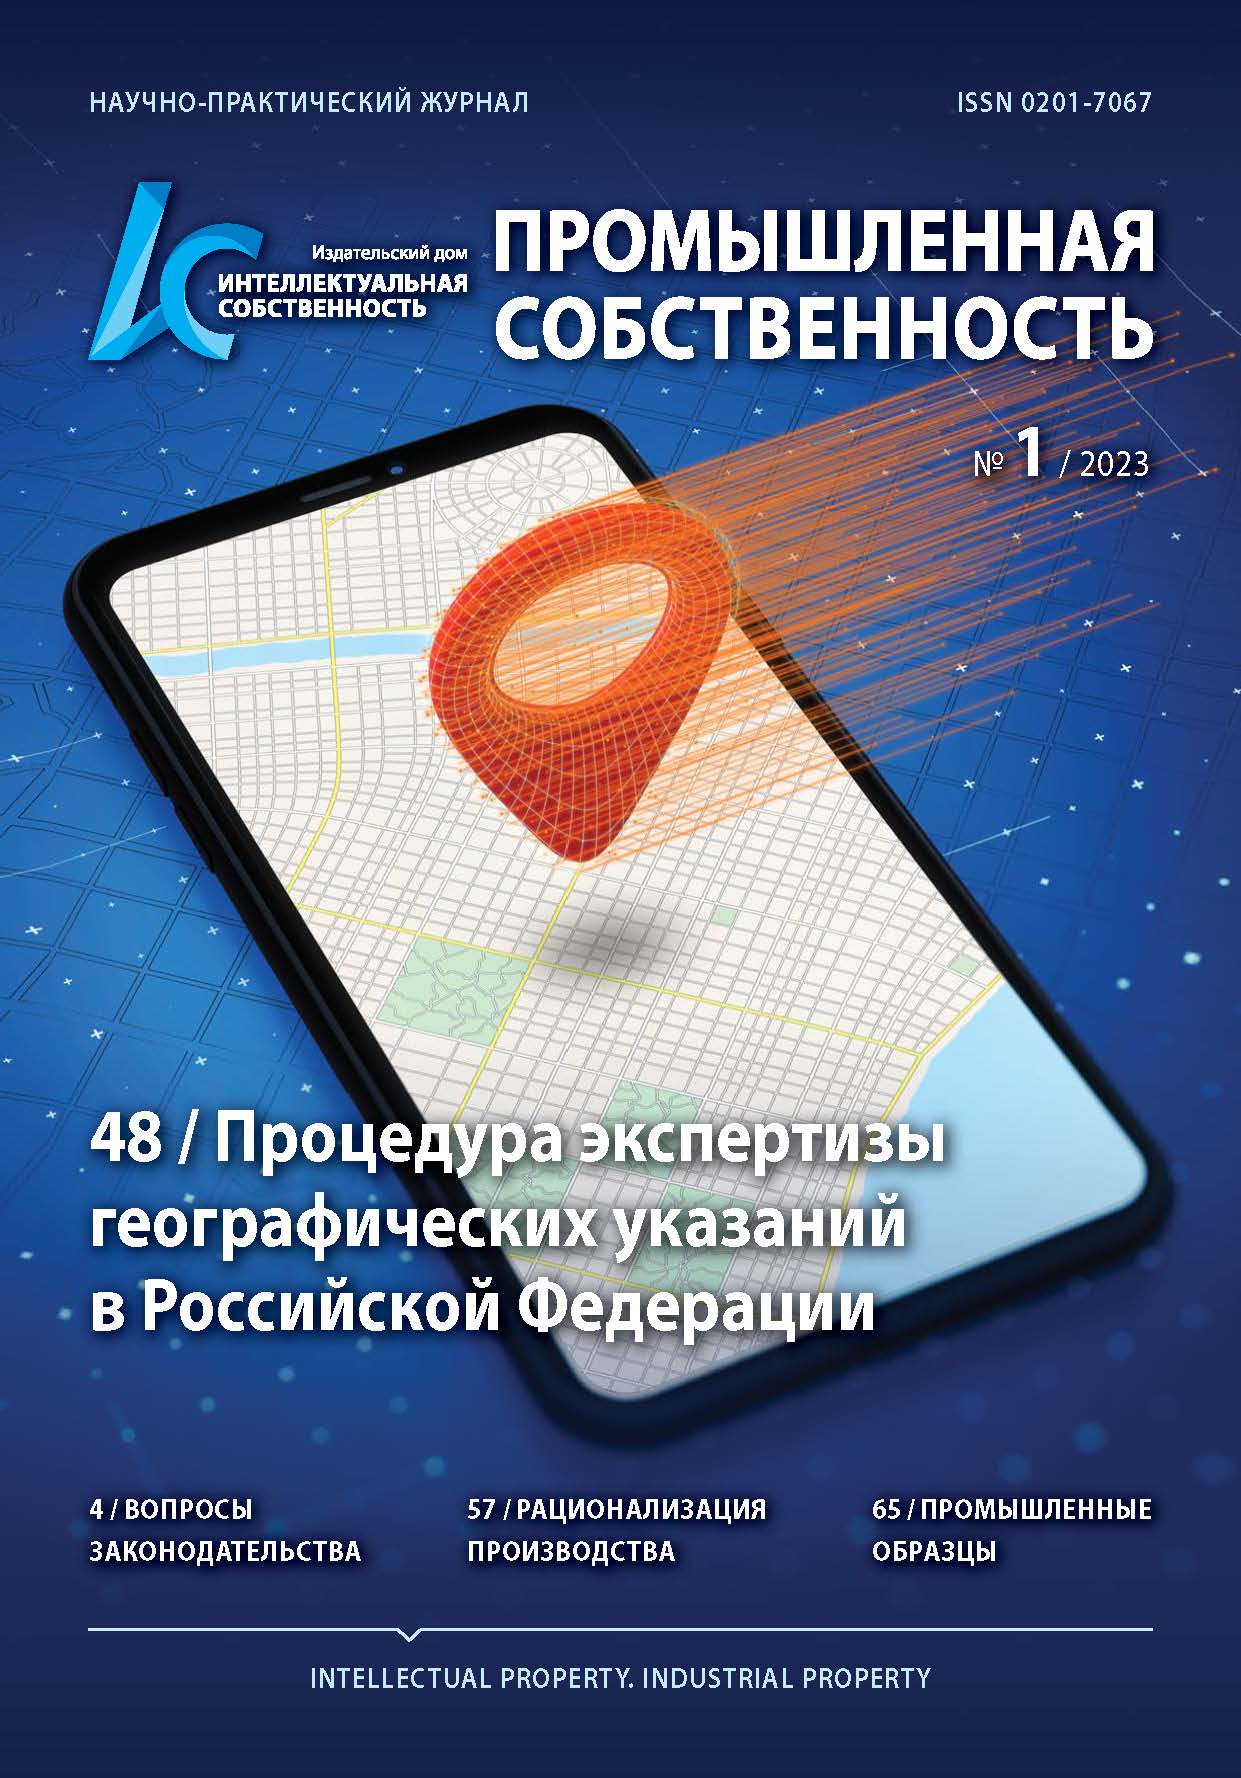 Процедура экспертизы географических указаний в Российской Федерации